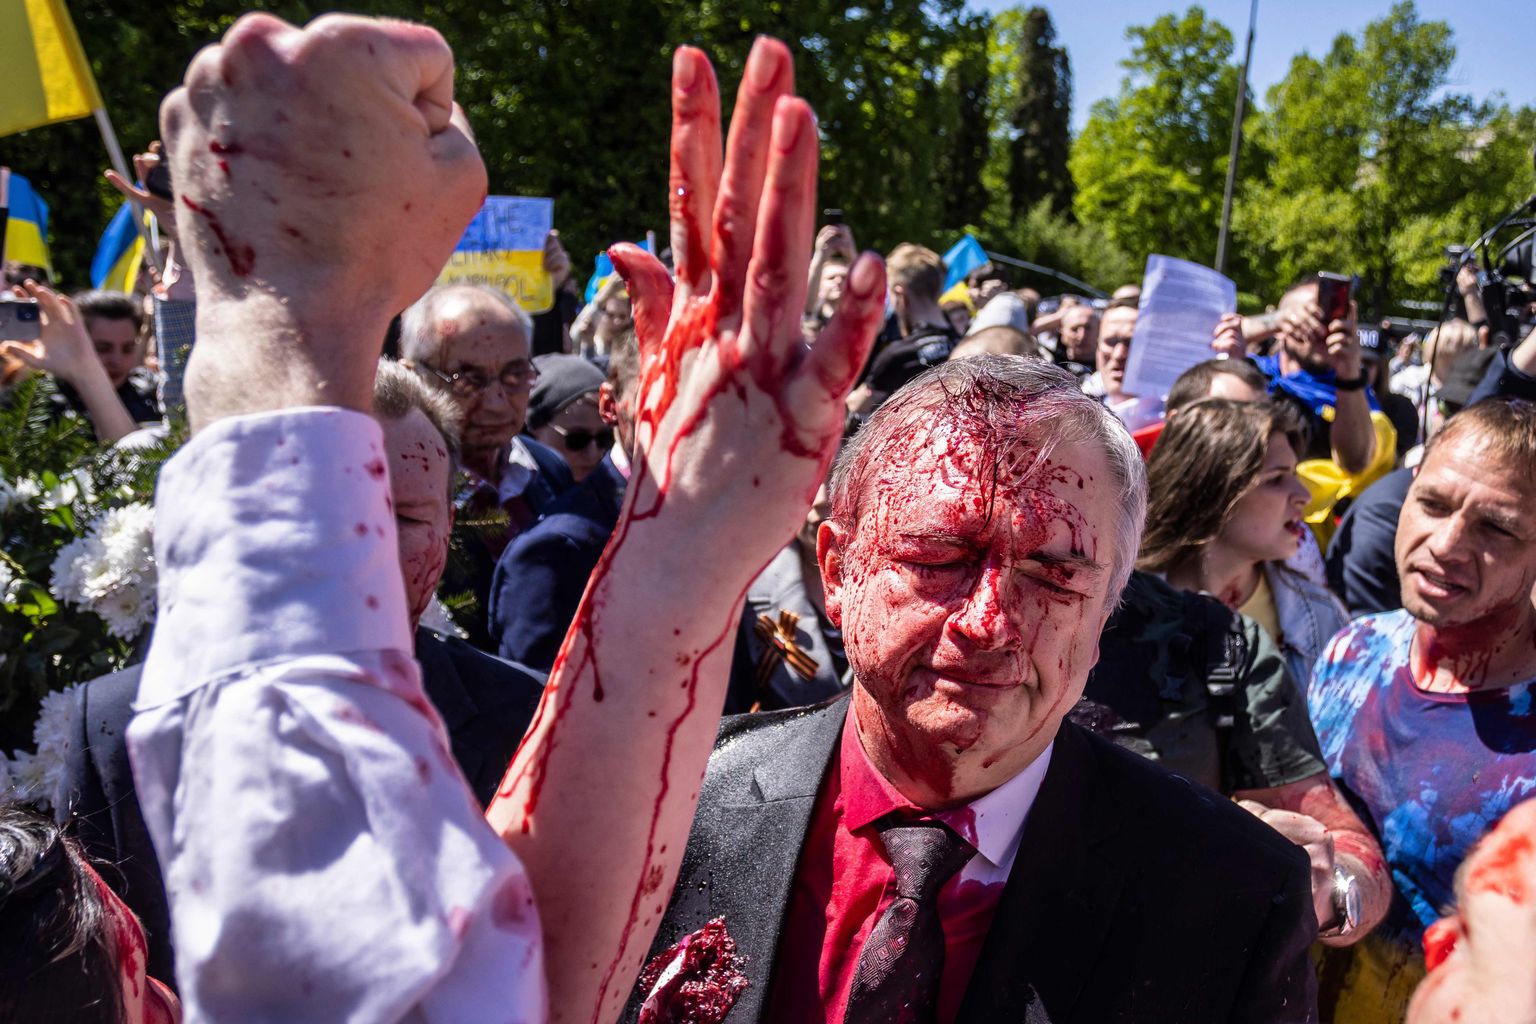 Venemaa suursaadik Poolas Sergei Andrejev sai Venemaa vastasel meeleavaldusel Varssavis punase värviga pihta.